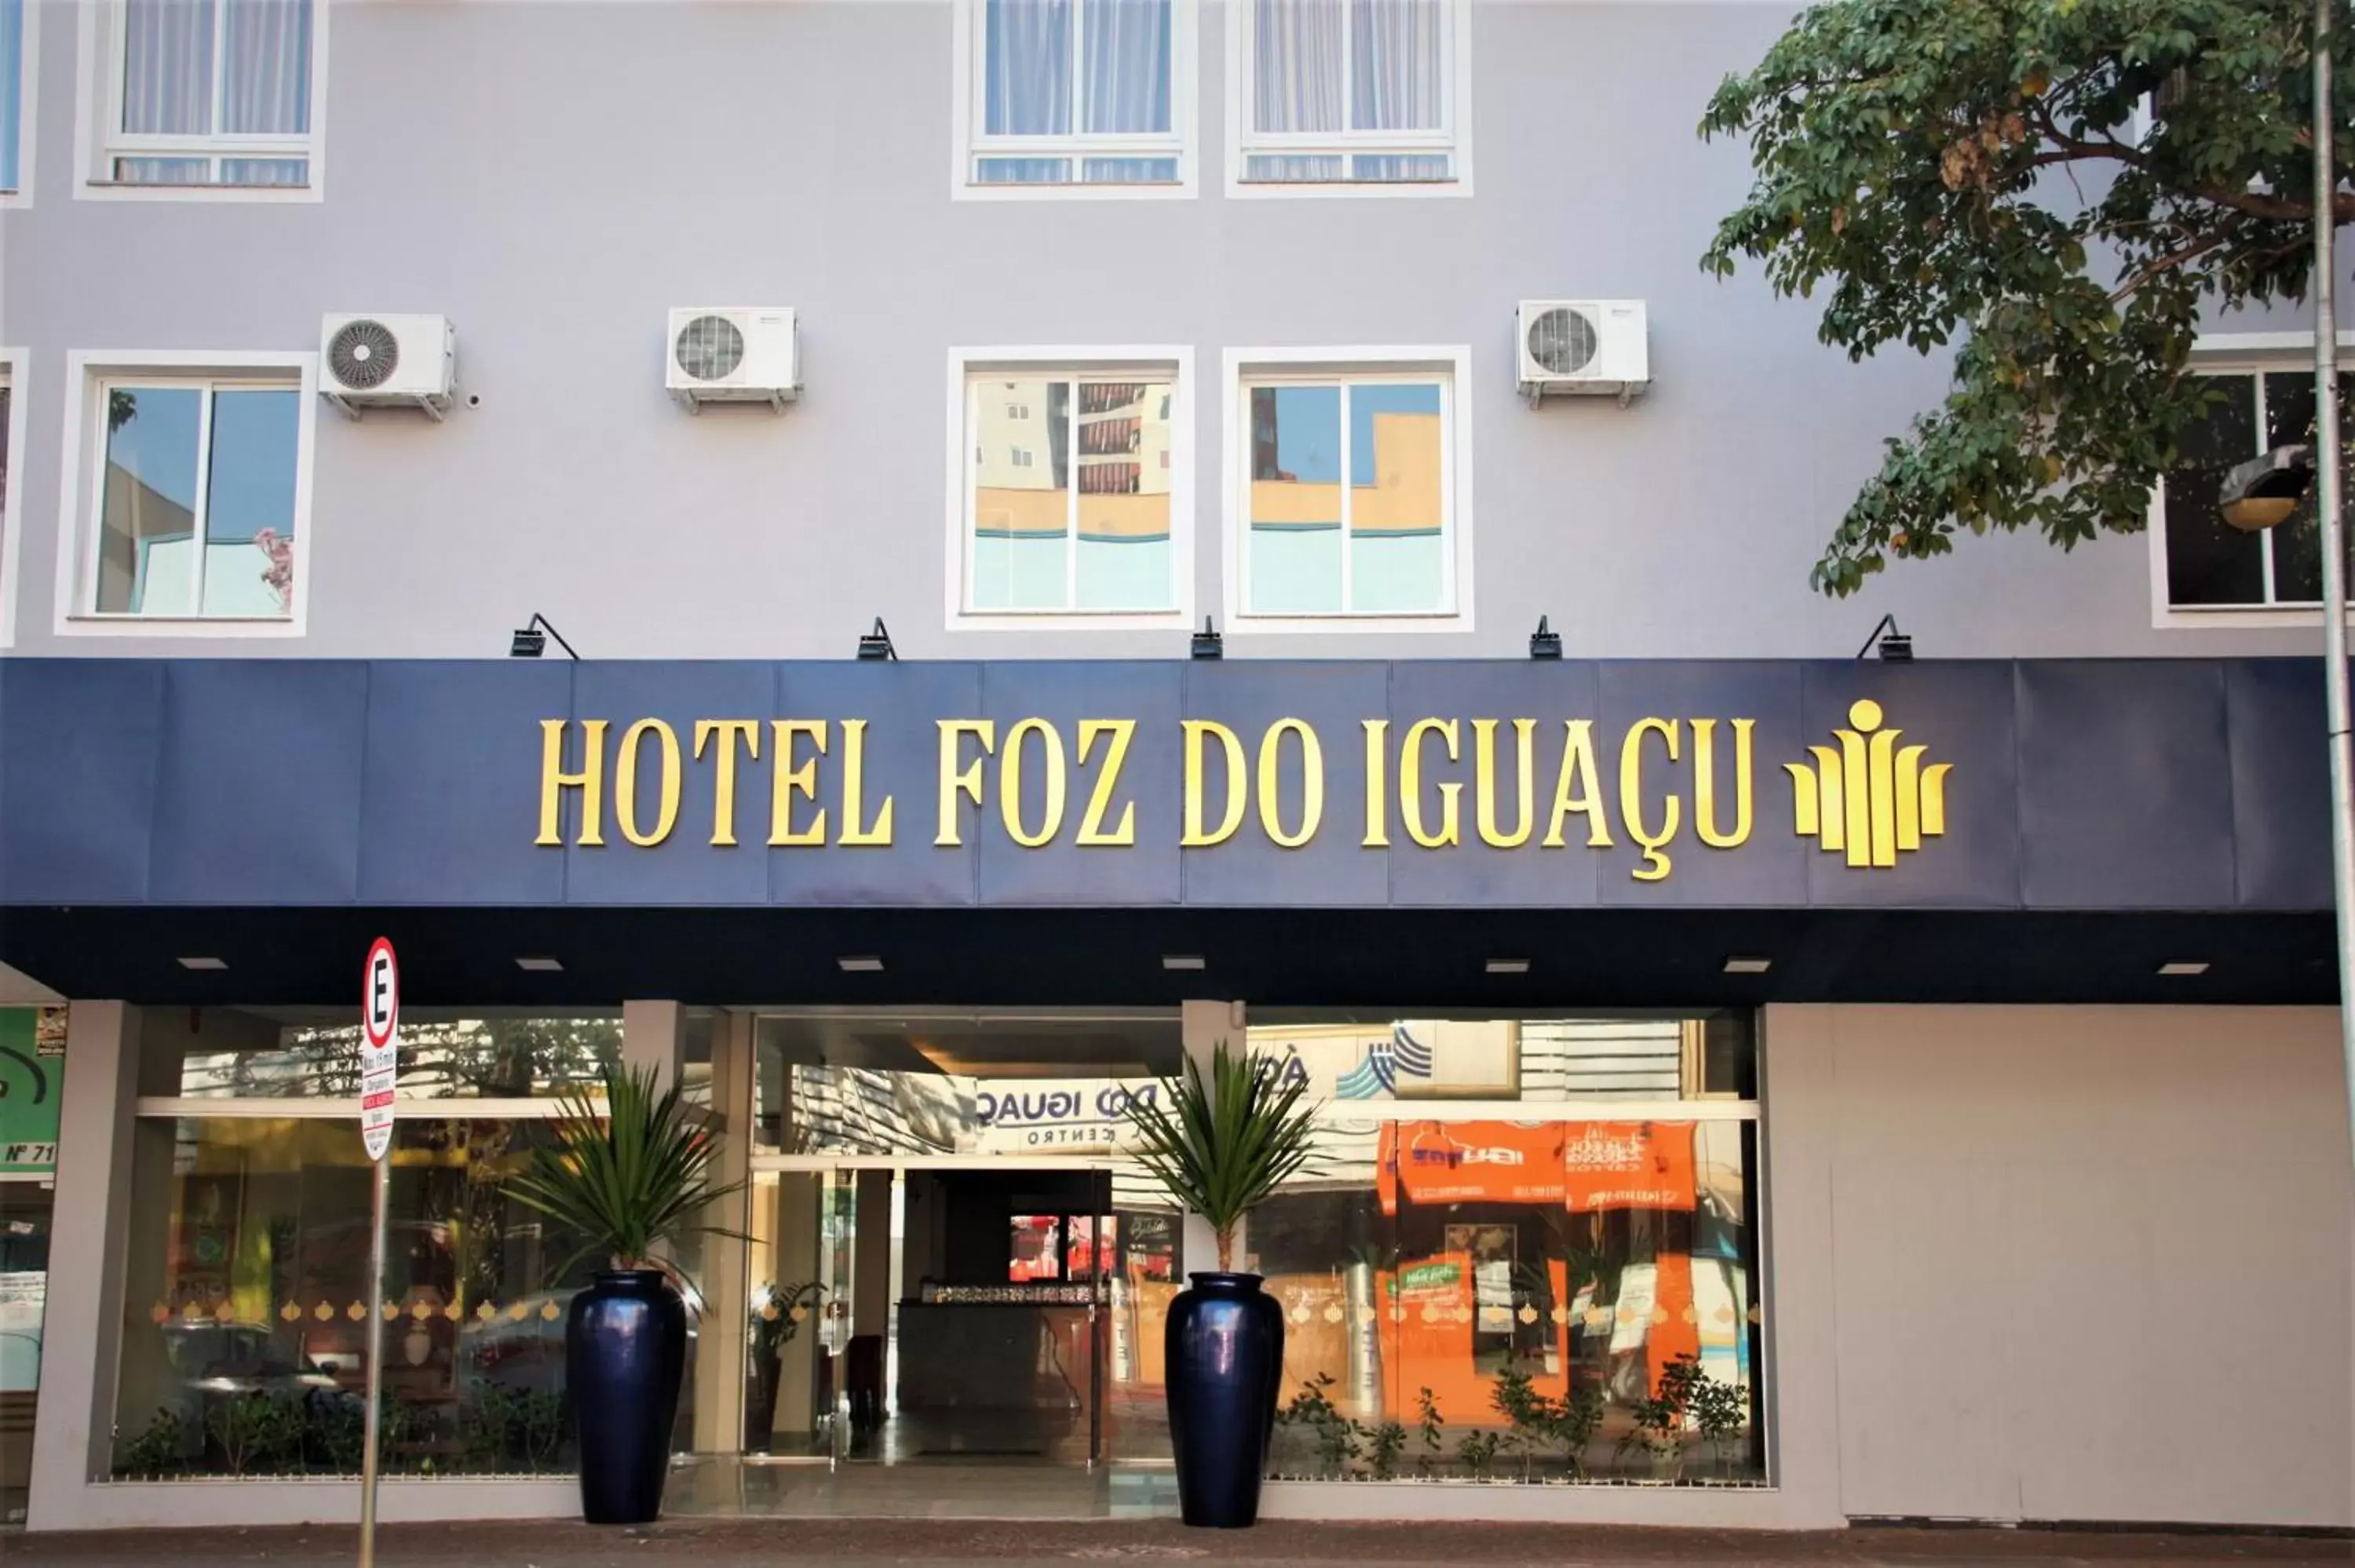 Facade/entrance in Hotel Foz do Iguaçu